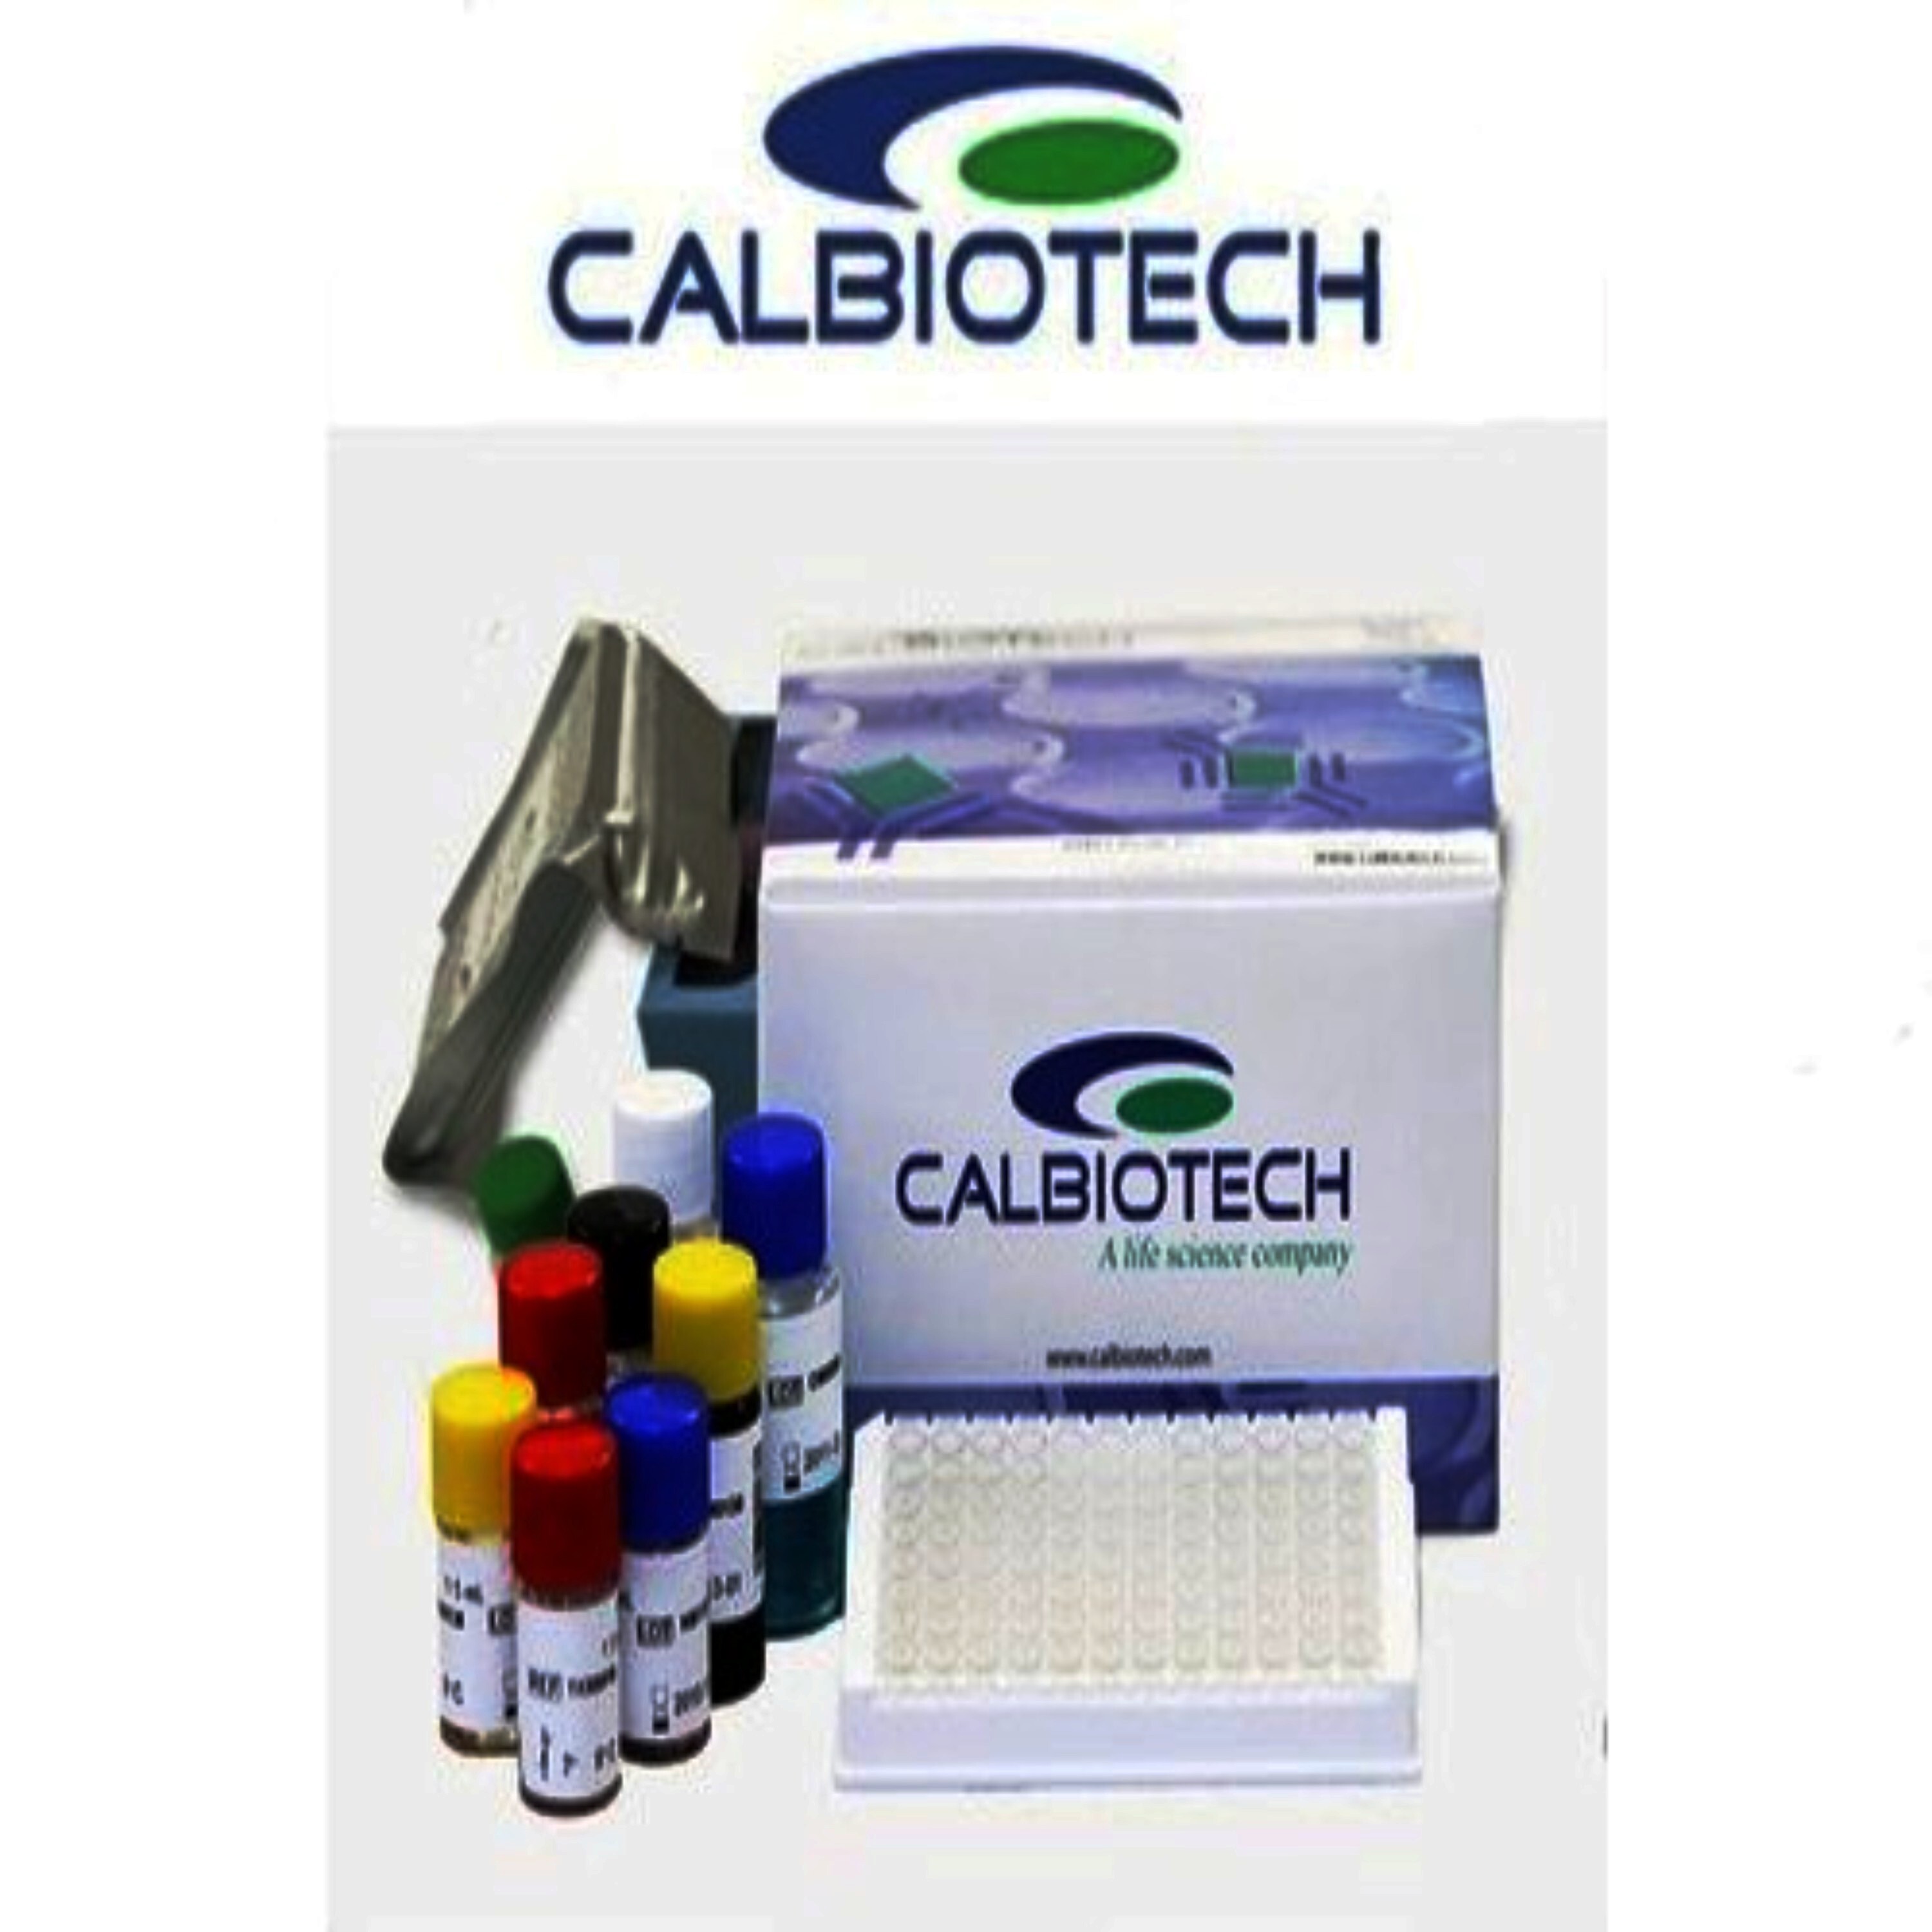 Calbiotech CA 125 Elisa Kit